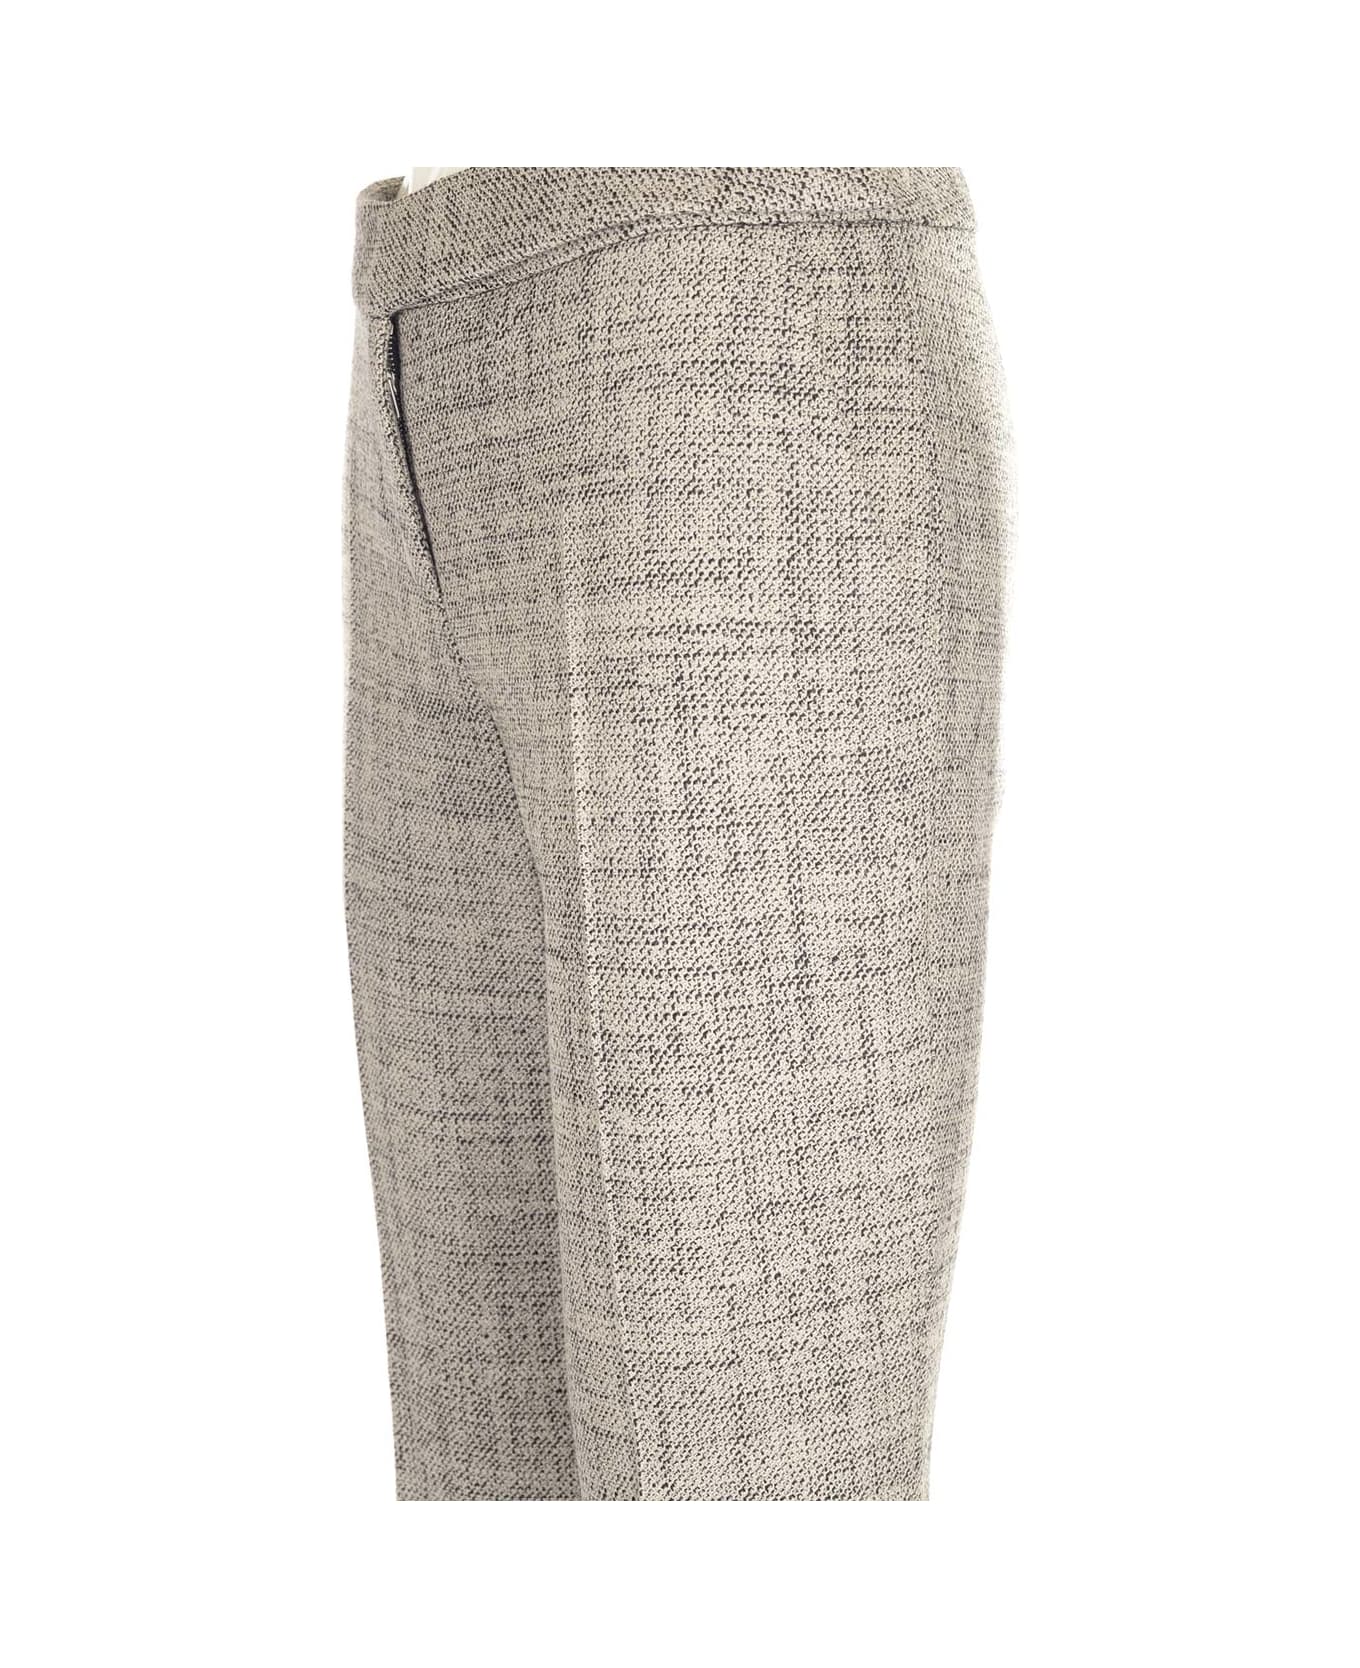 Stella McCartney Slim Fit Tailored Trousers In Oat Wool Mouline - Brown